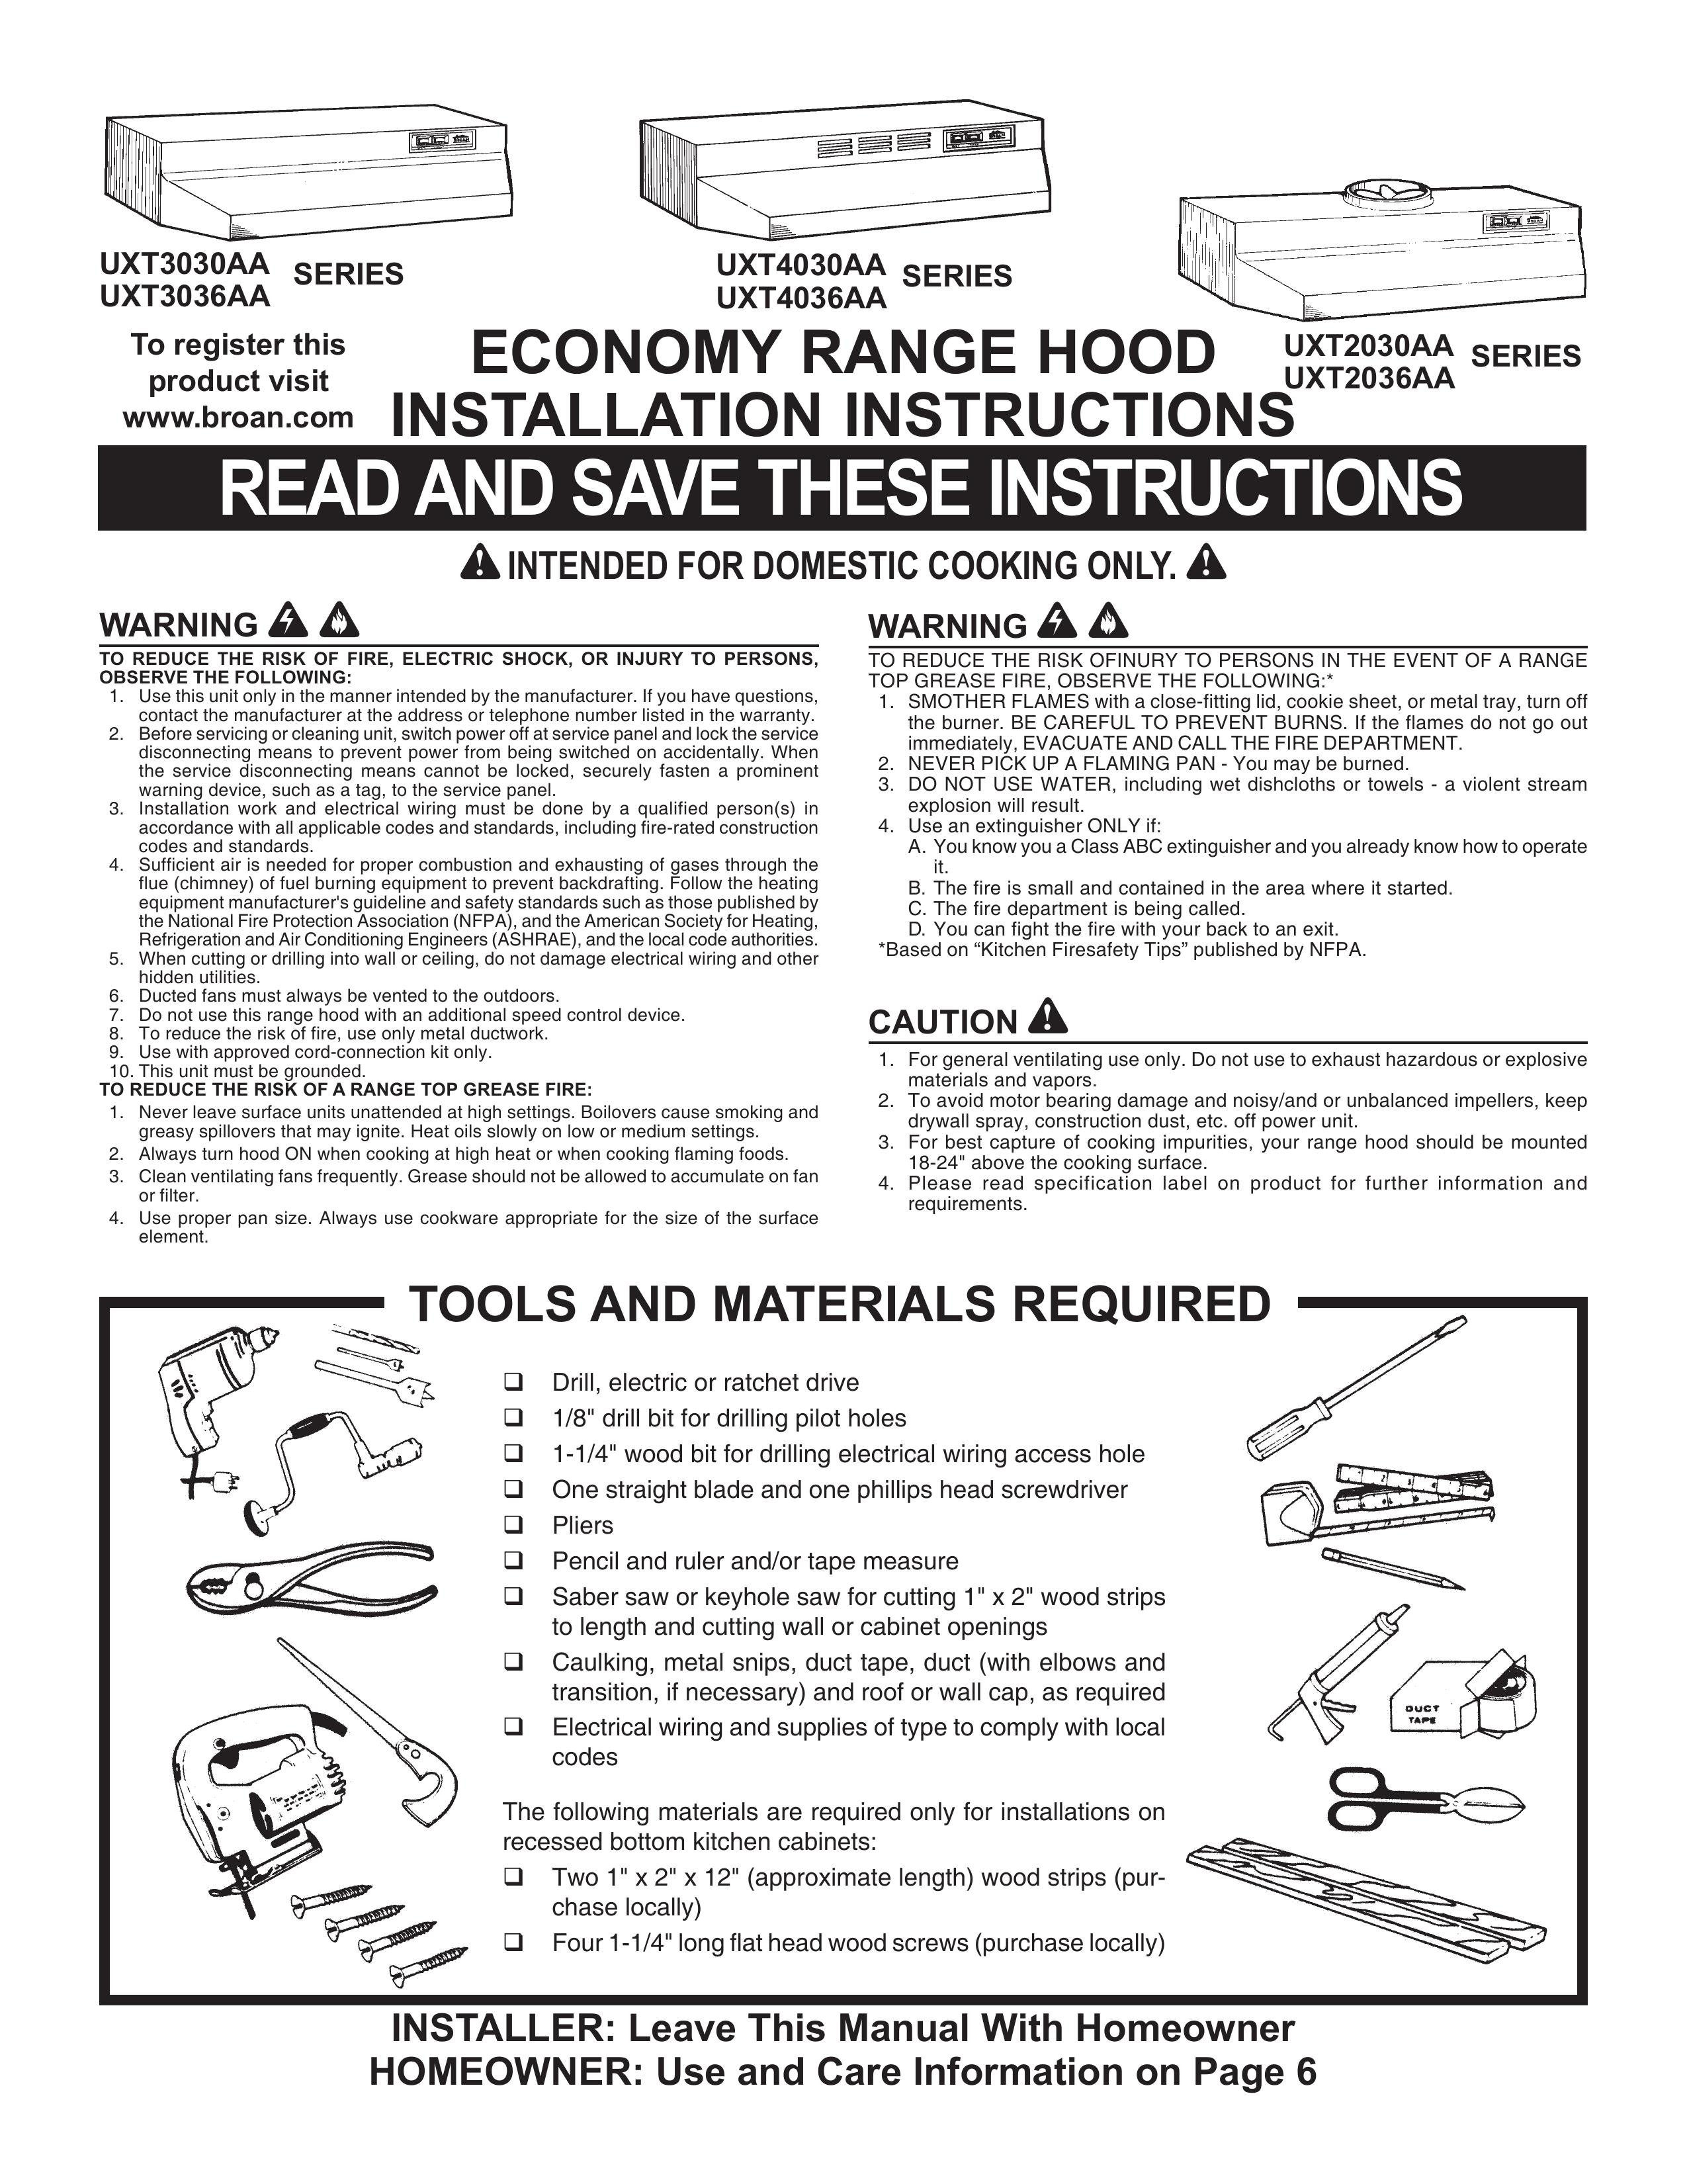 Maytag UXT4036AA Ventilation Hood User Manual